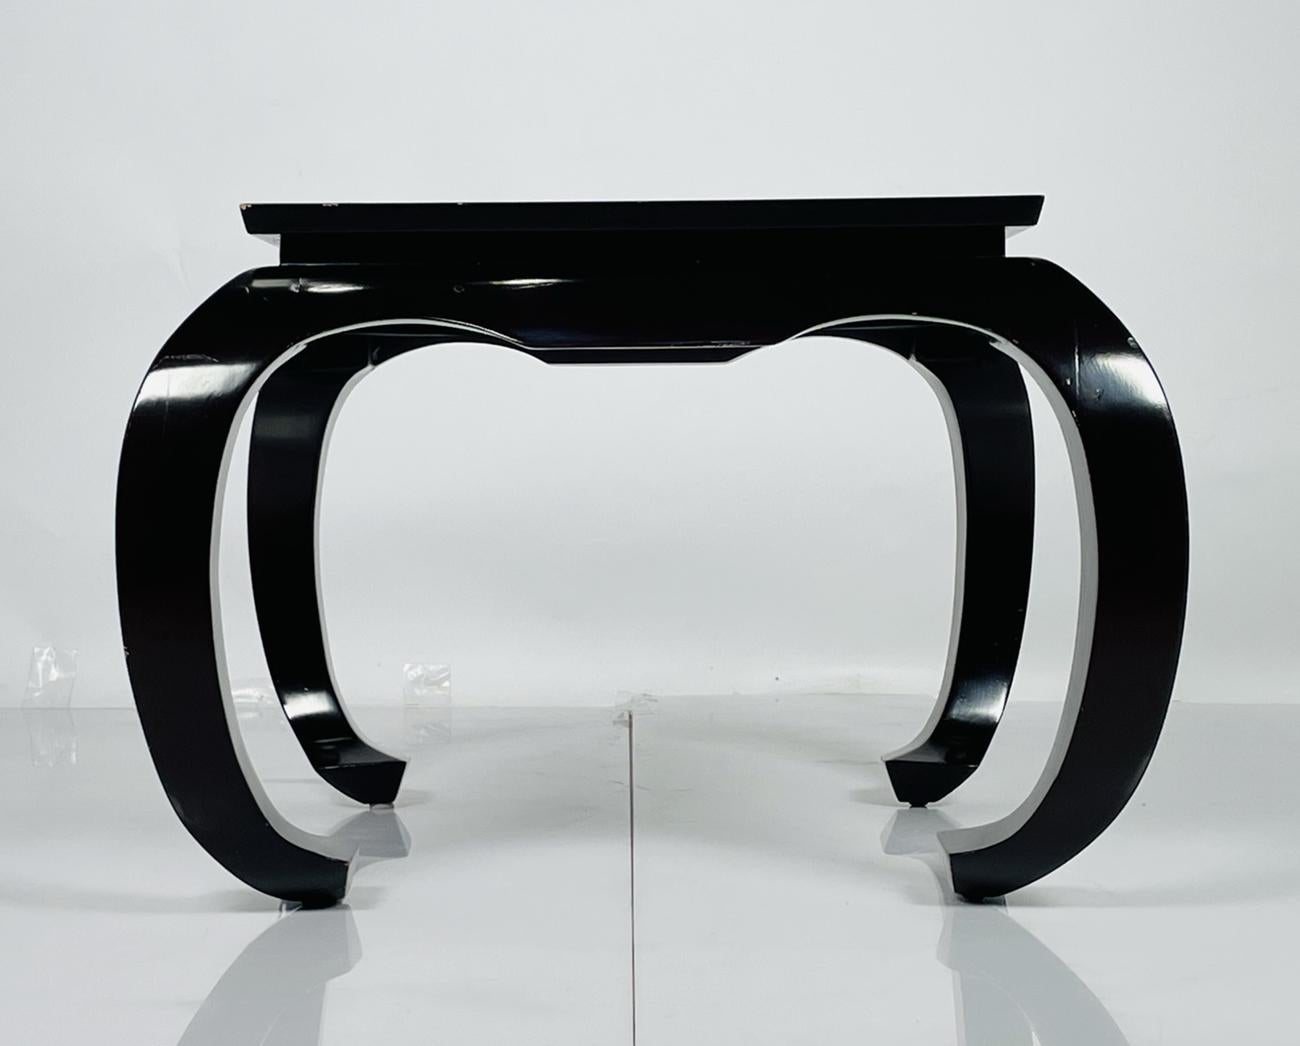 Voici notre exquise table d'appoint de style Ming, un véritable bijou des États-Unis datant des années 1960. Ce superbe meuble capture sans effort l'essence de l'esthétique de la dynastie Ming, mêlant l'élégance intemporelle à une touche